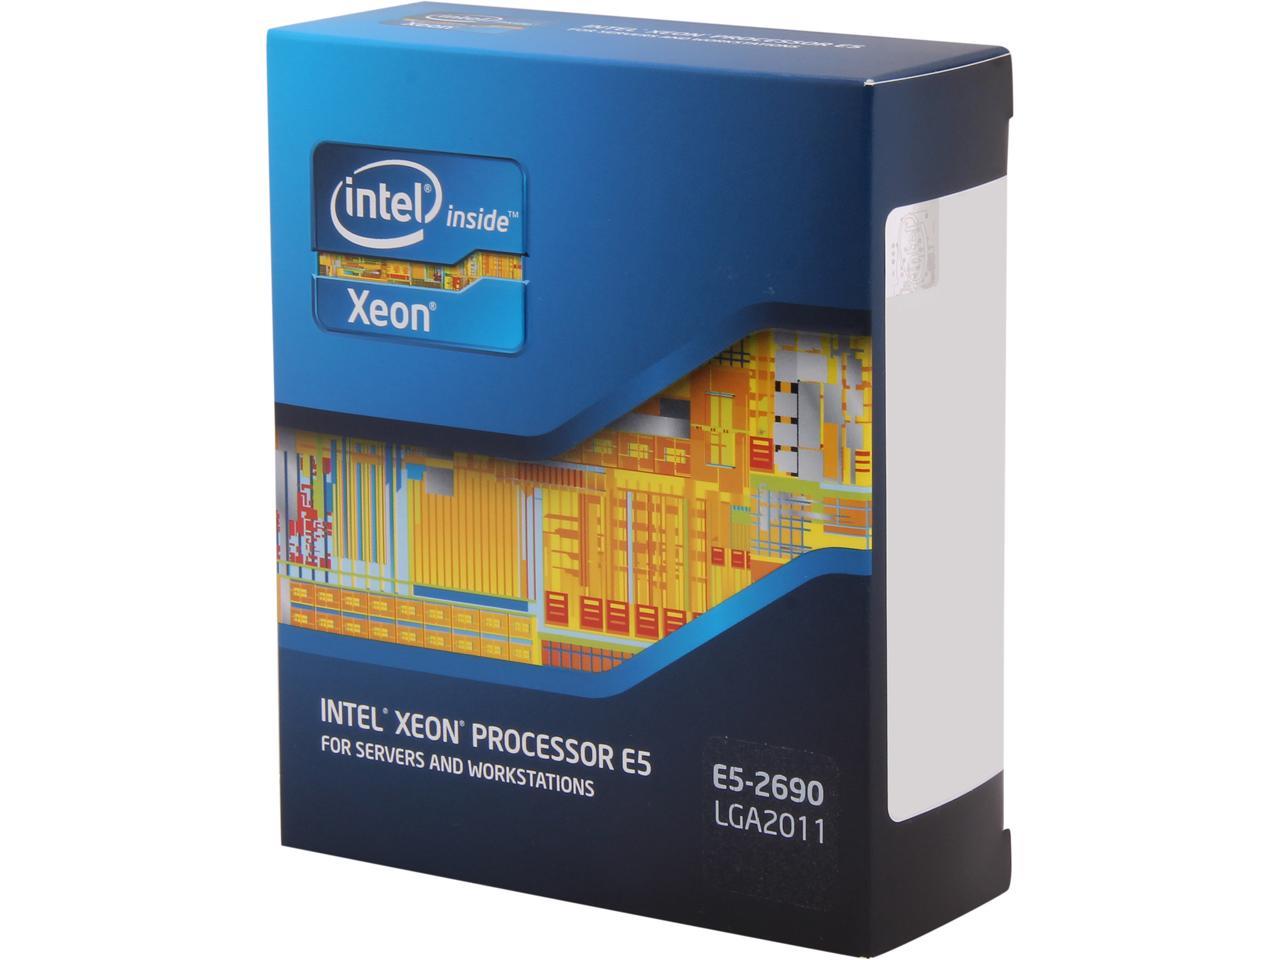 Intel 10x Intel Xeon PROCESSOR CPU SR0L0 E5-2690 20 MB L3 Cache 2.90 GHz 8C 8GT/s 135w 